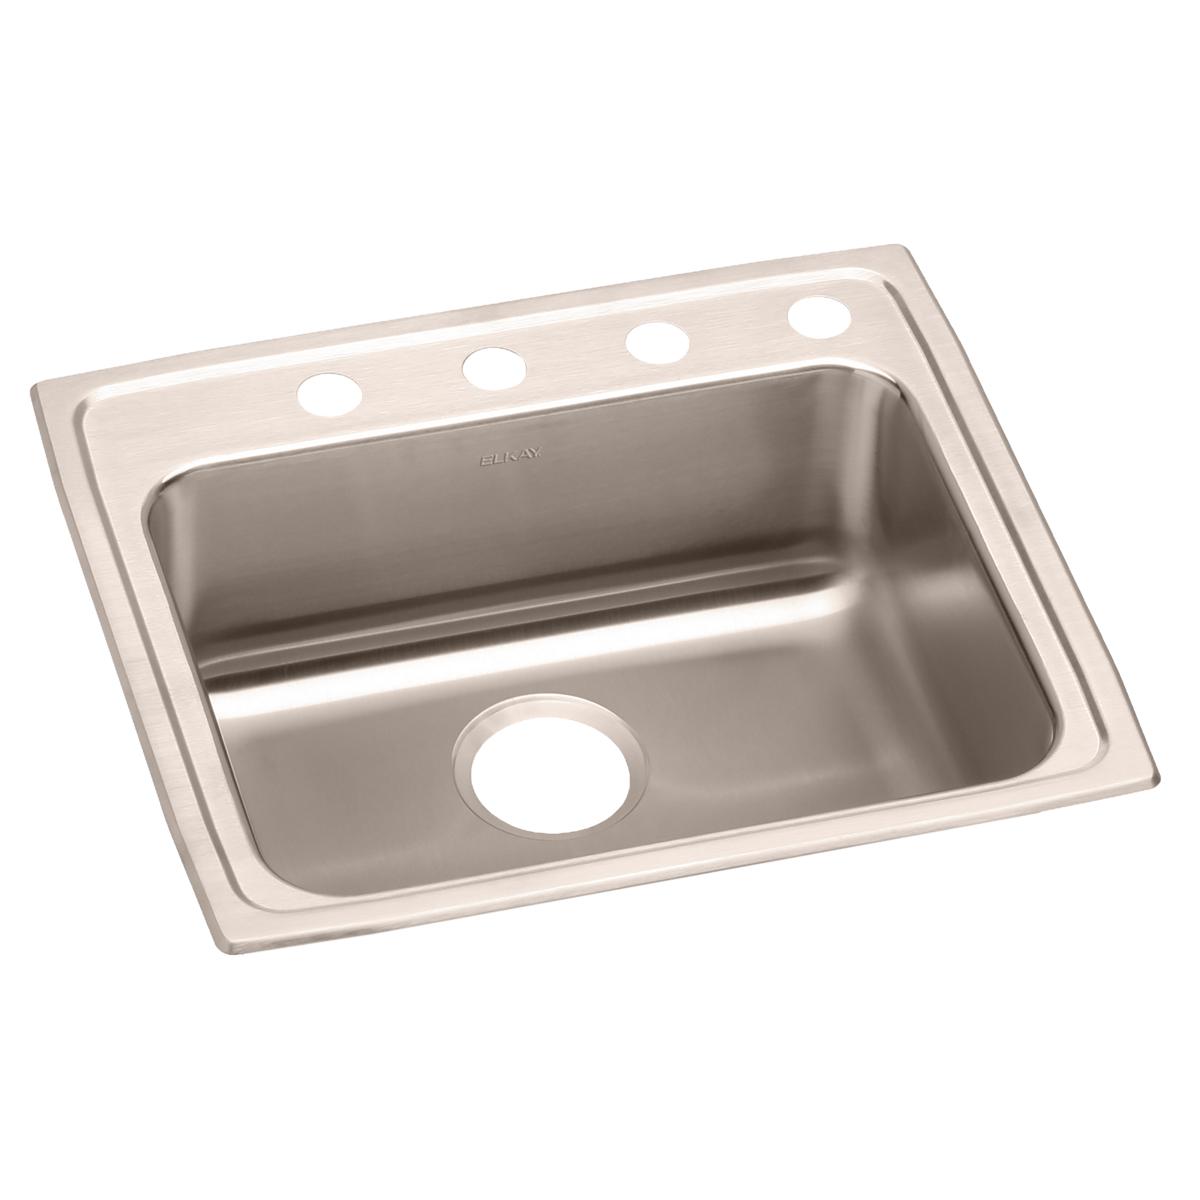 Elkay Lustertone Classic Stainless Steel 25" x 21-1/4" x 5-1/2", Single Bowl Drop-in ADA Sink